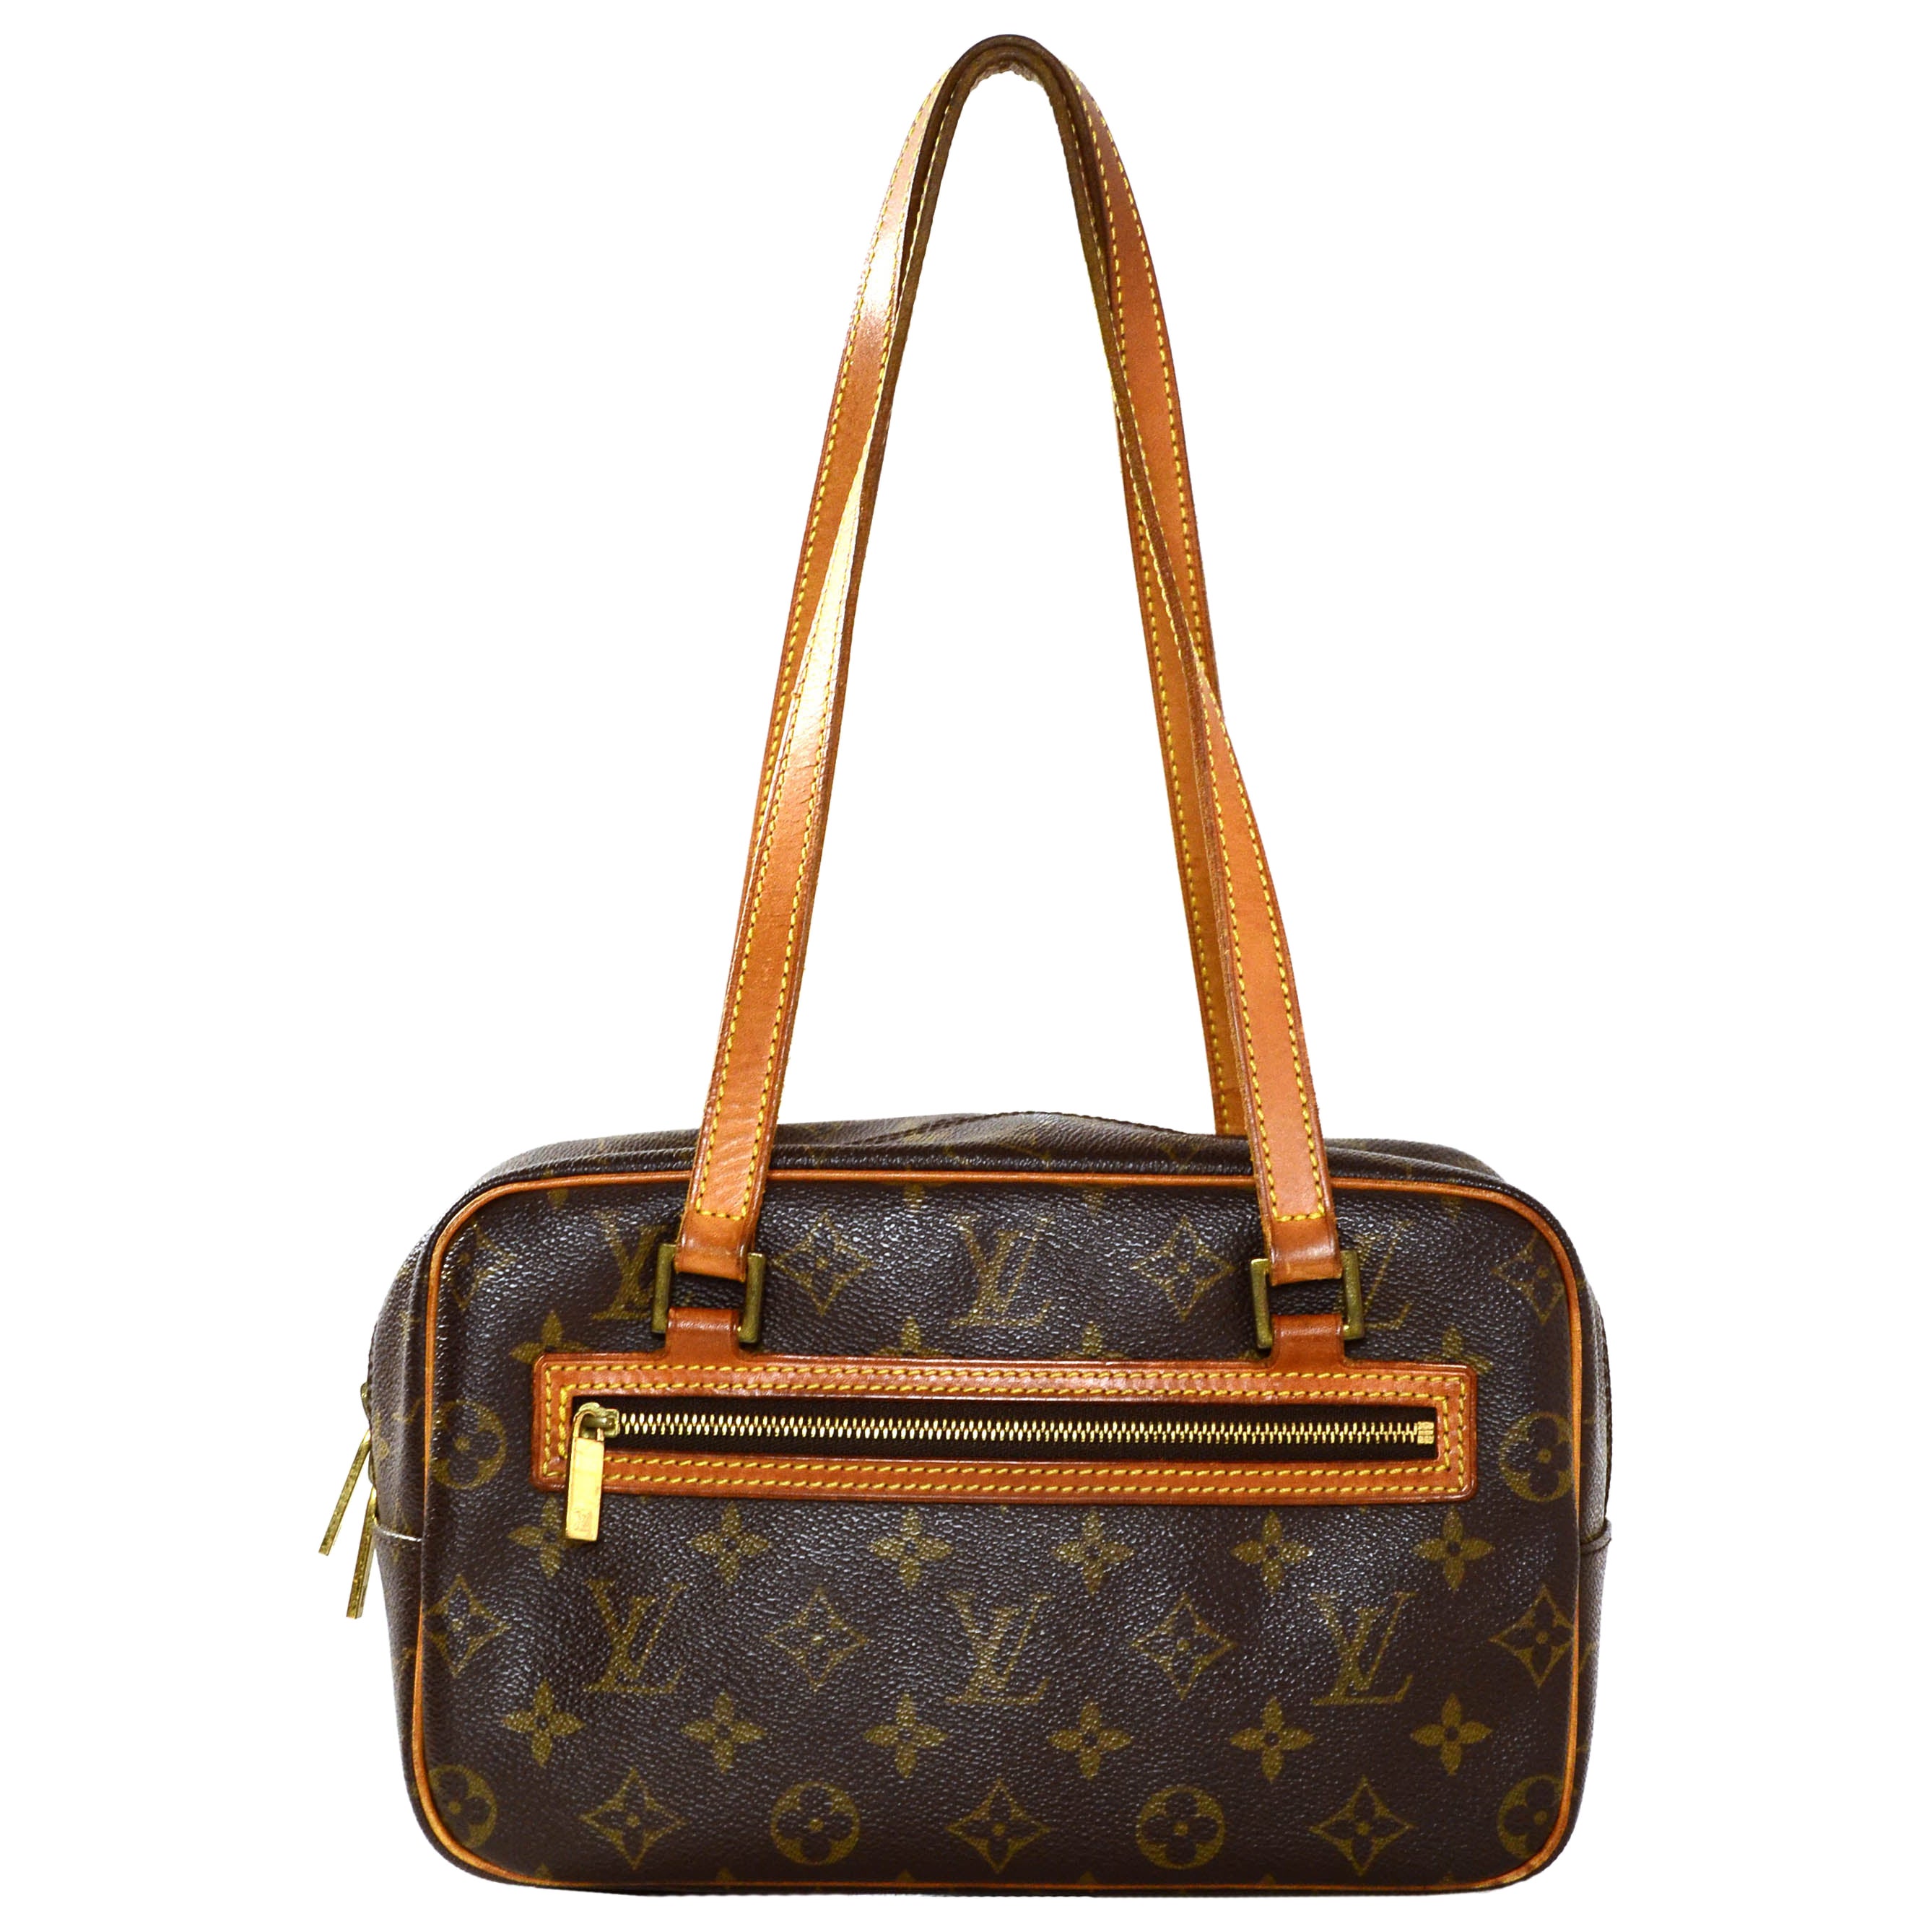 Louis Vuitton - Ellipse PM Handbag - Monogram Canvas GHW - Pre